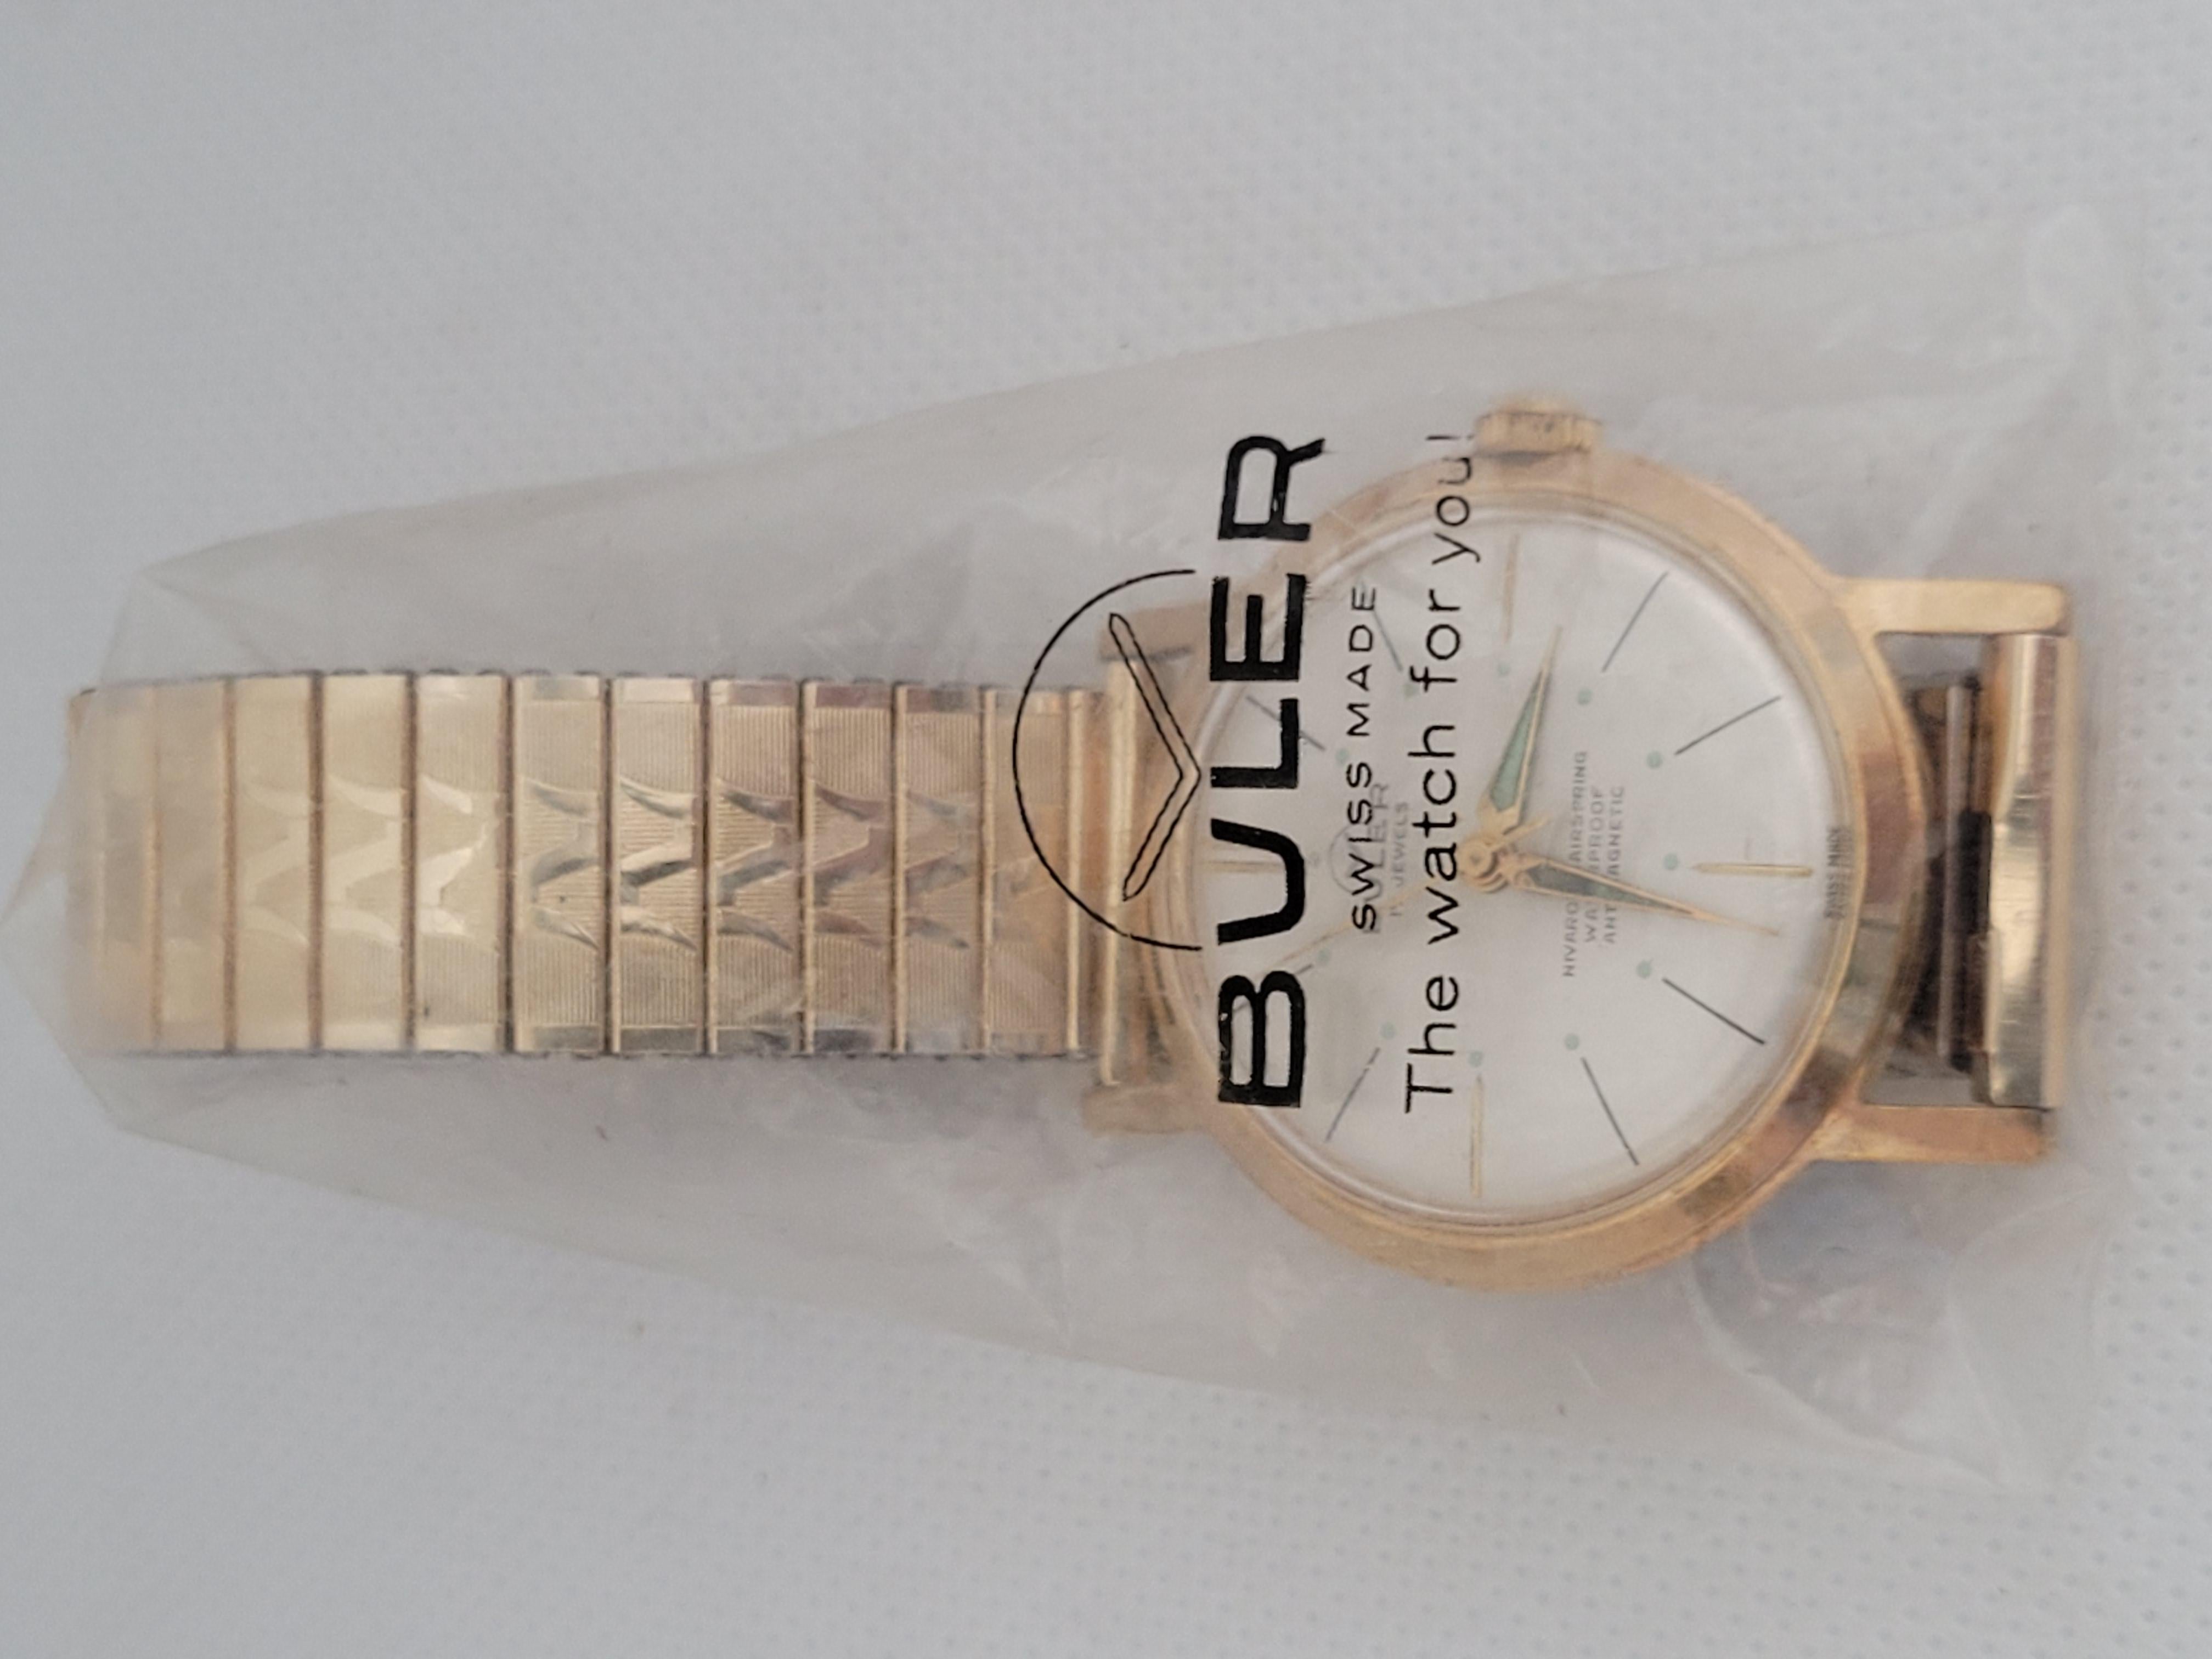 Buler Watch 1950s Working Stainless Steel Model #1197 17 Jewel Swiss 2